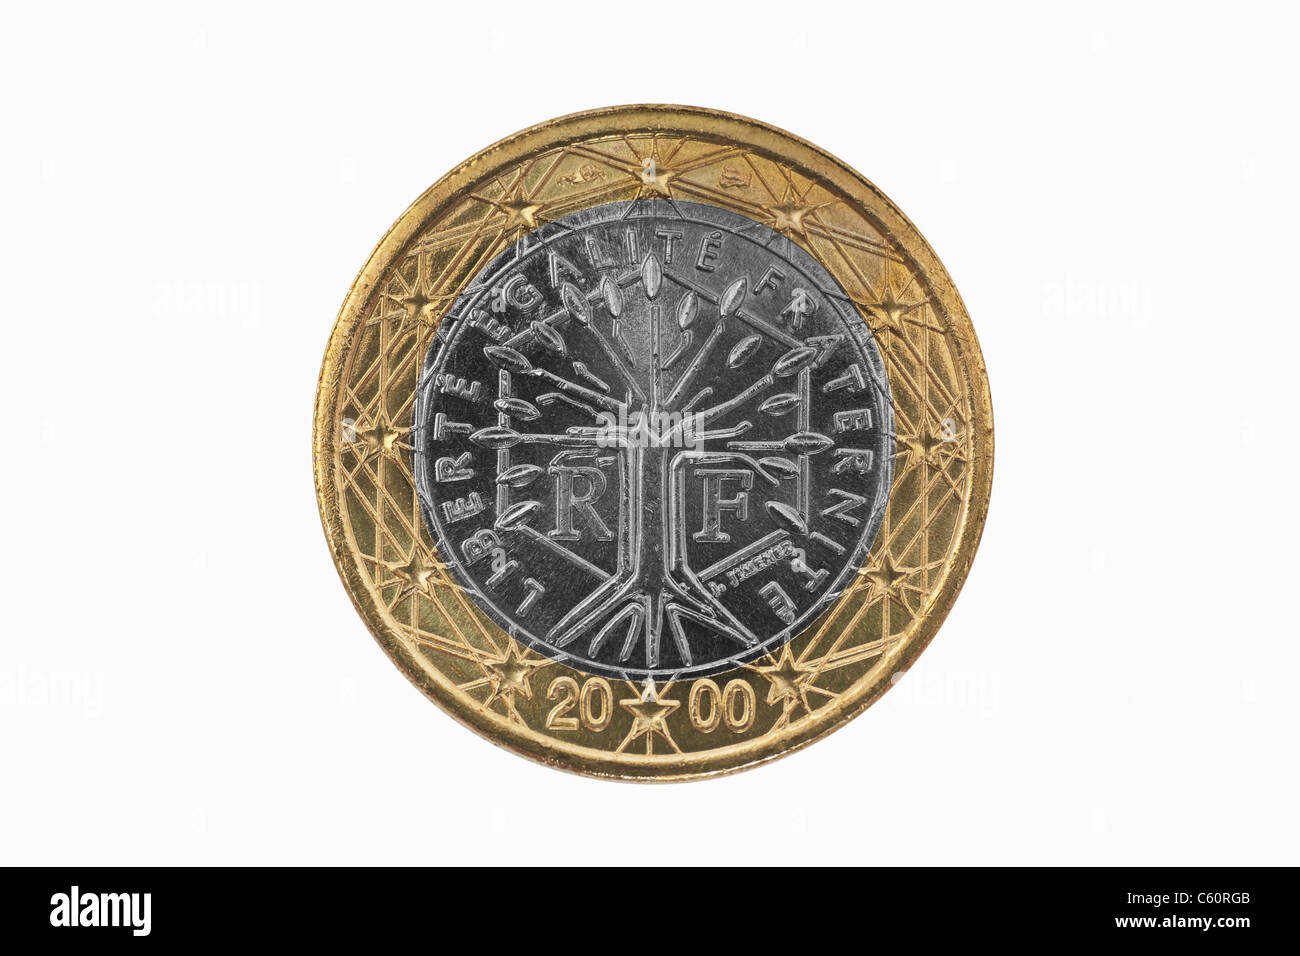 Detailansicht der Rückseite mit 1- Euro Münze aus Frankreich | photo détail d'un verso d'une pièce de 1 Euro à partir de la France Banque D'Images